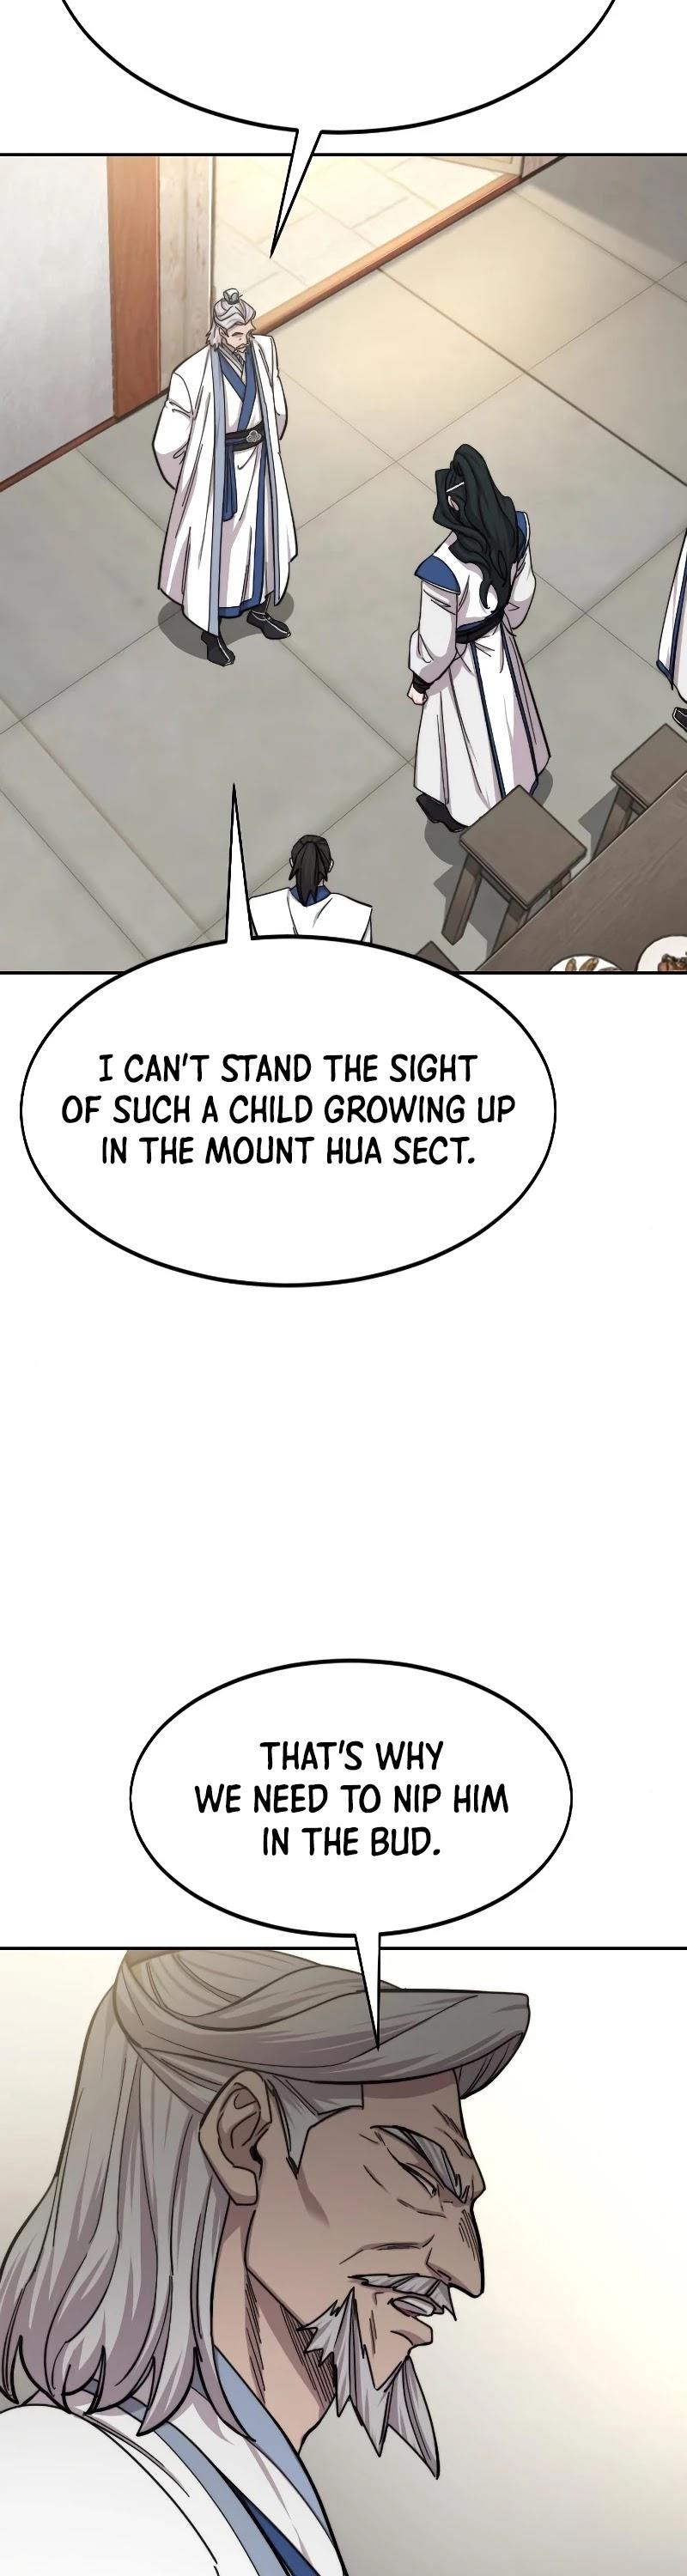 Return Of The Mount Hua Sect Chapter 56 page 31 - Mangakakalot